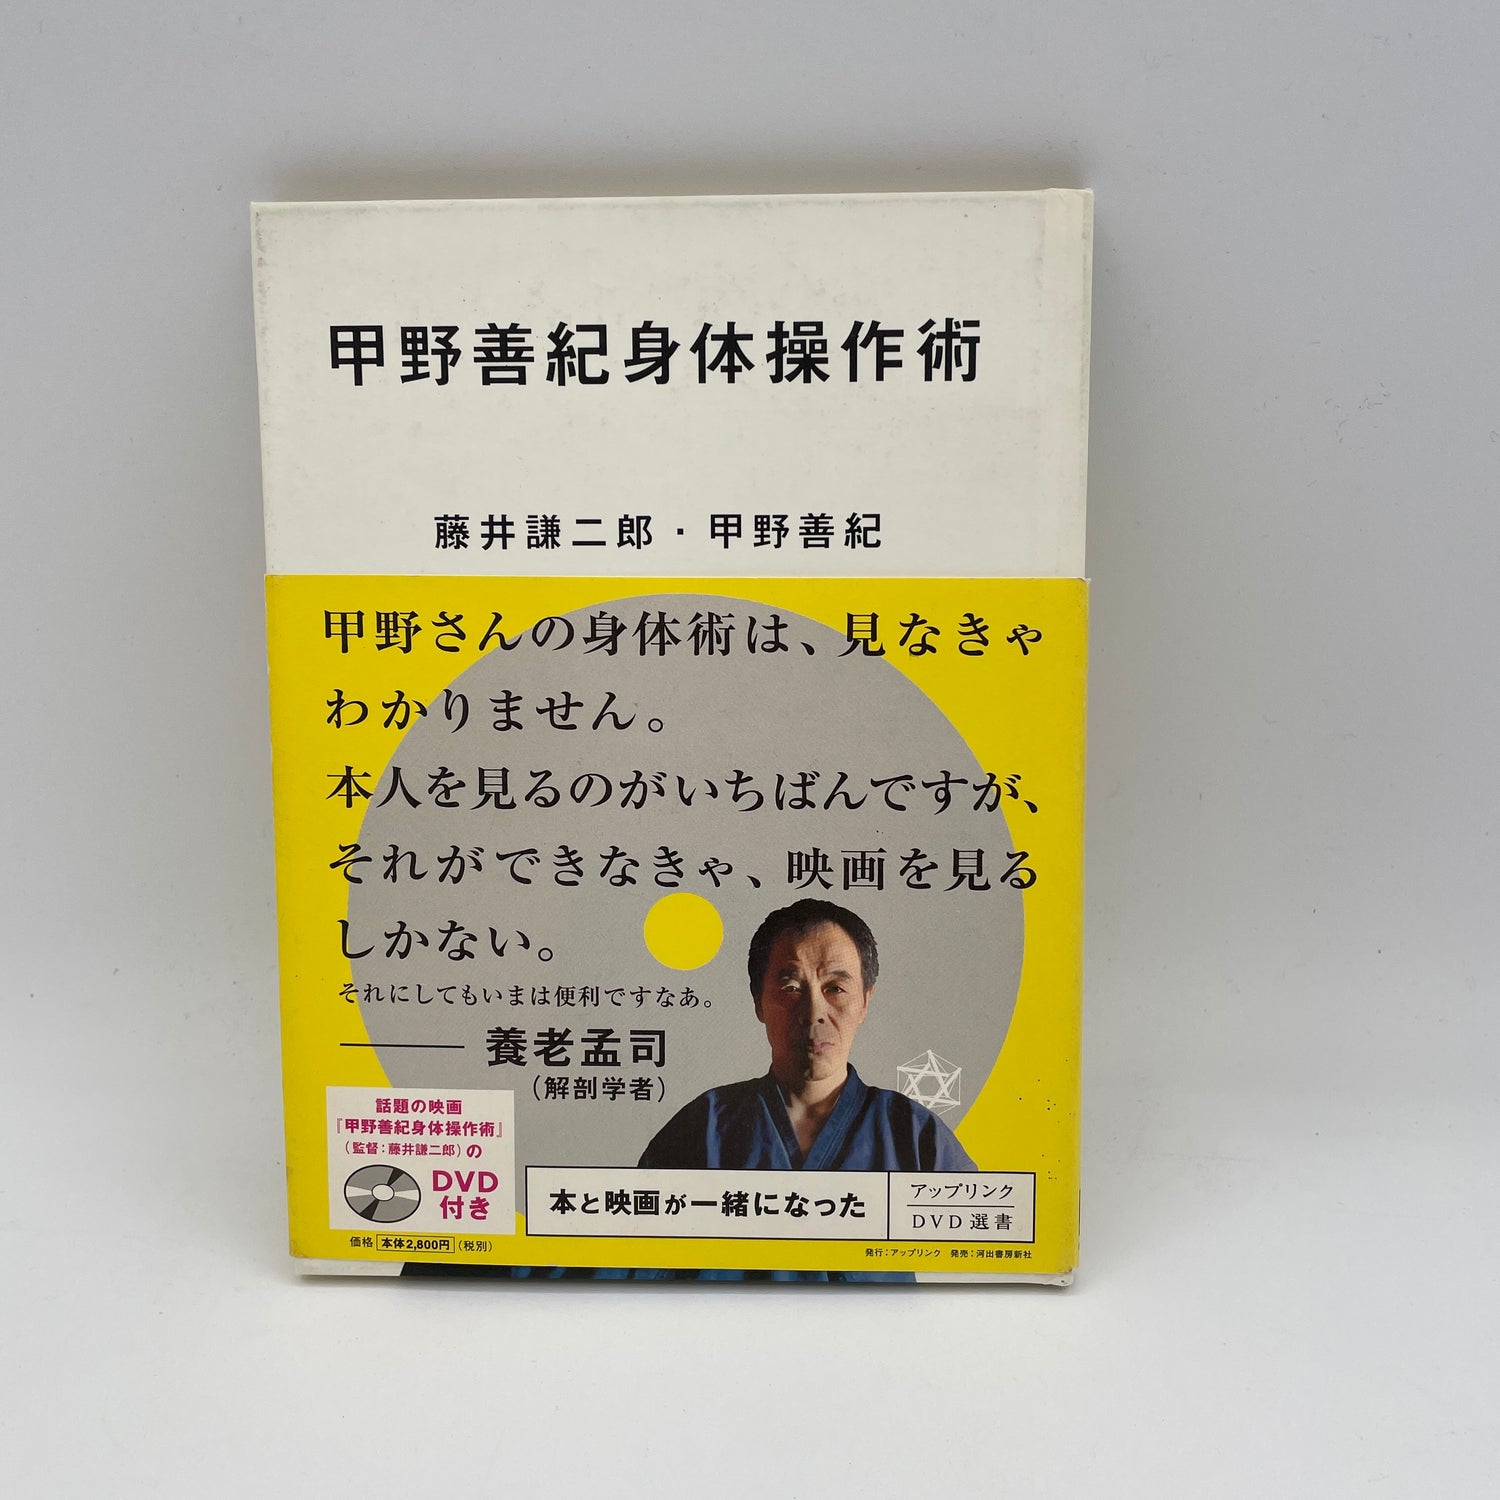 ボディマニピュレーションテクニック 本&DVD 河野善紀著 (ハードカバー) (中古)